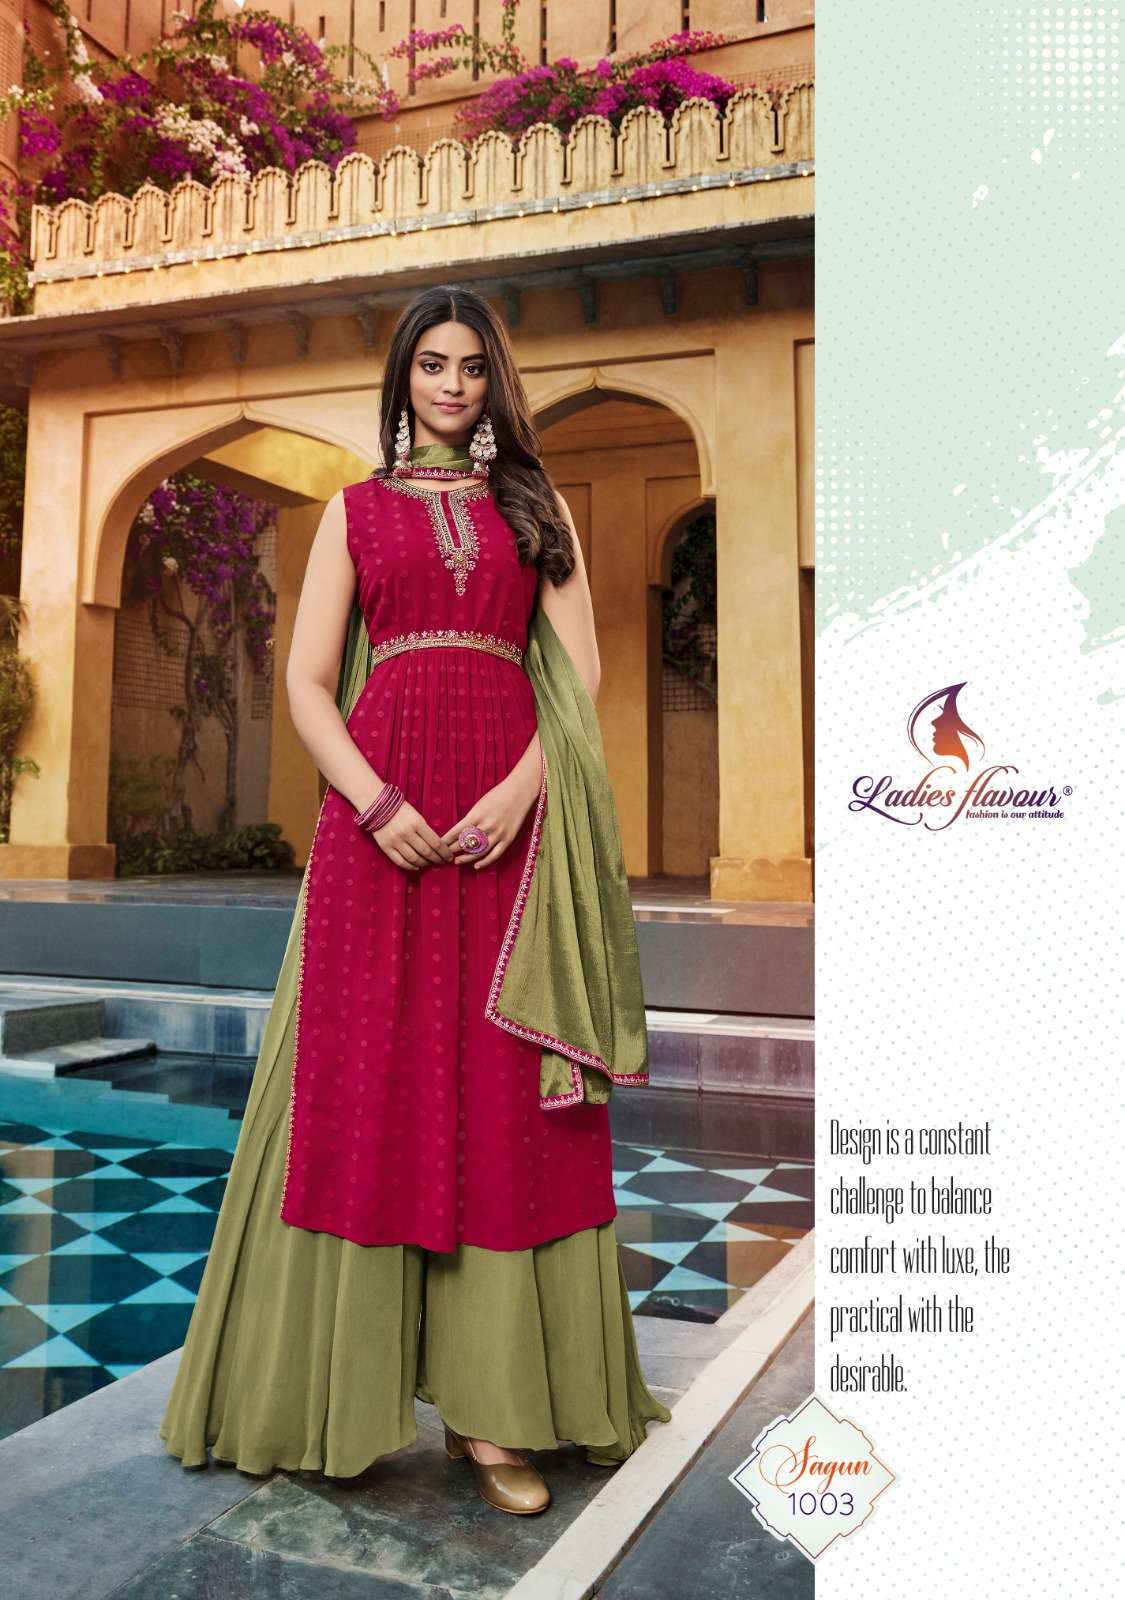 Stylish Kurti with Plazo set at Rs.3750/Piece in surat offer by Maa  Narayani fashion